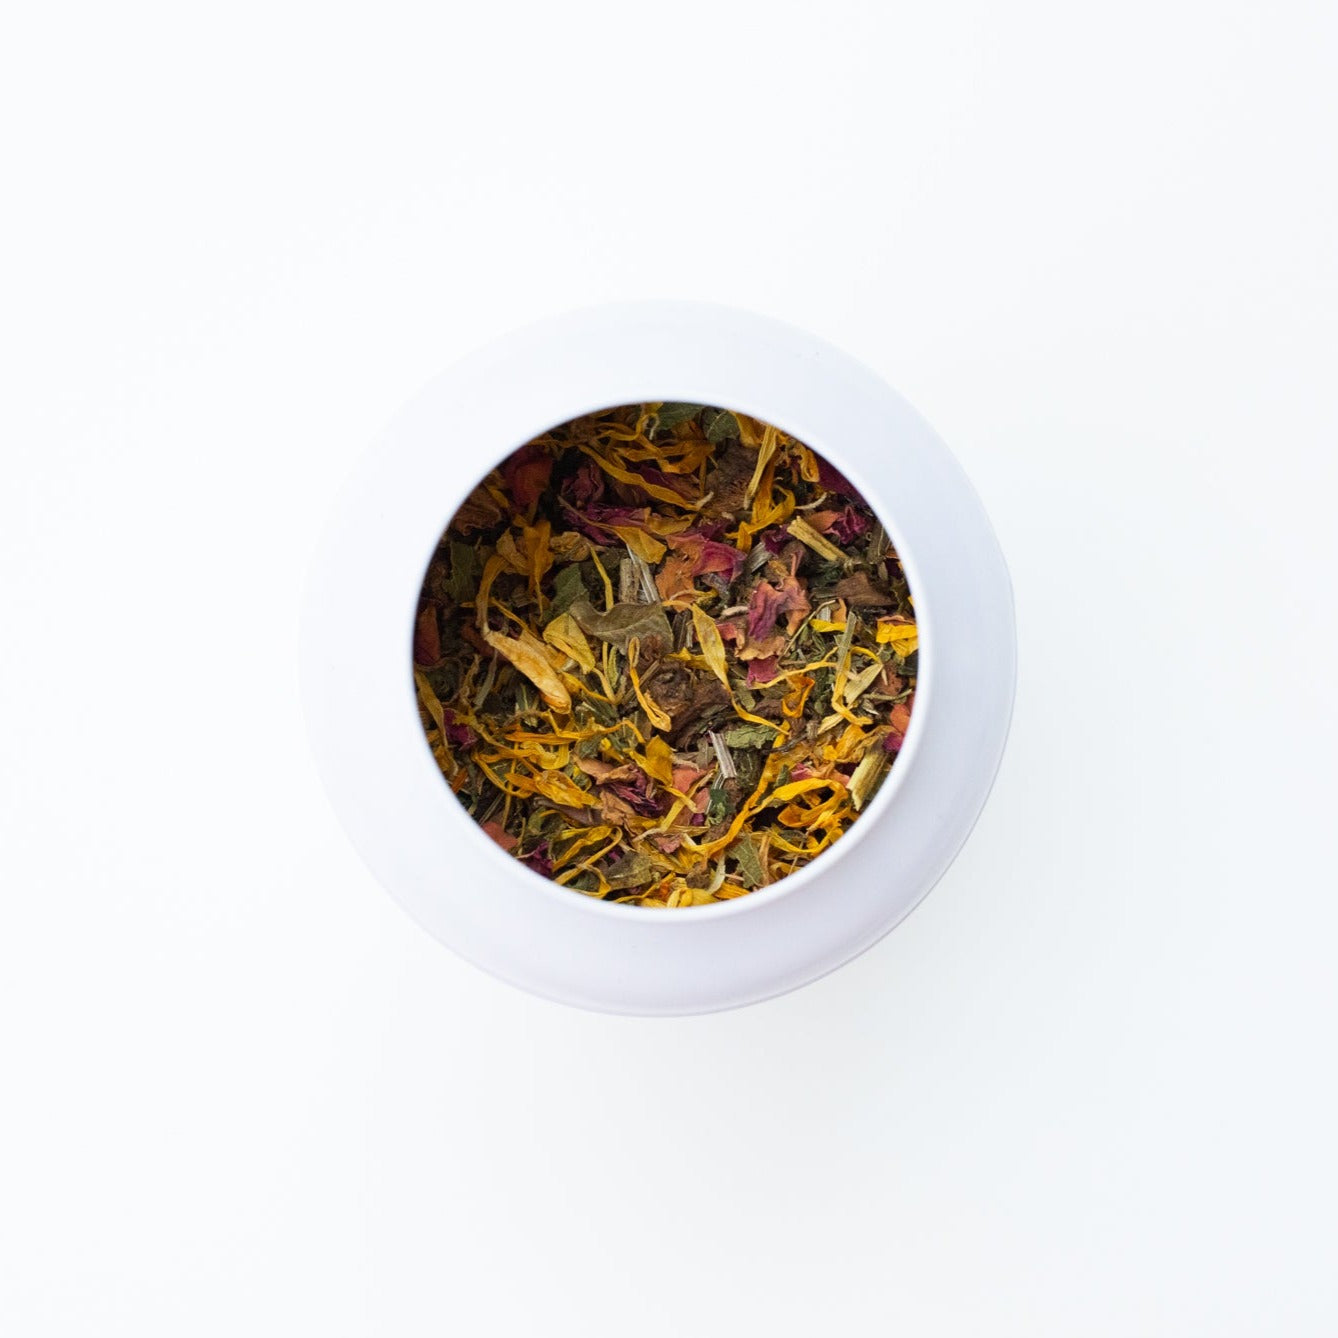 Skin Rescue Loose Herbal Tea | Organic & Wildcrafted ingredients